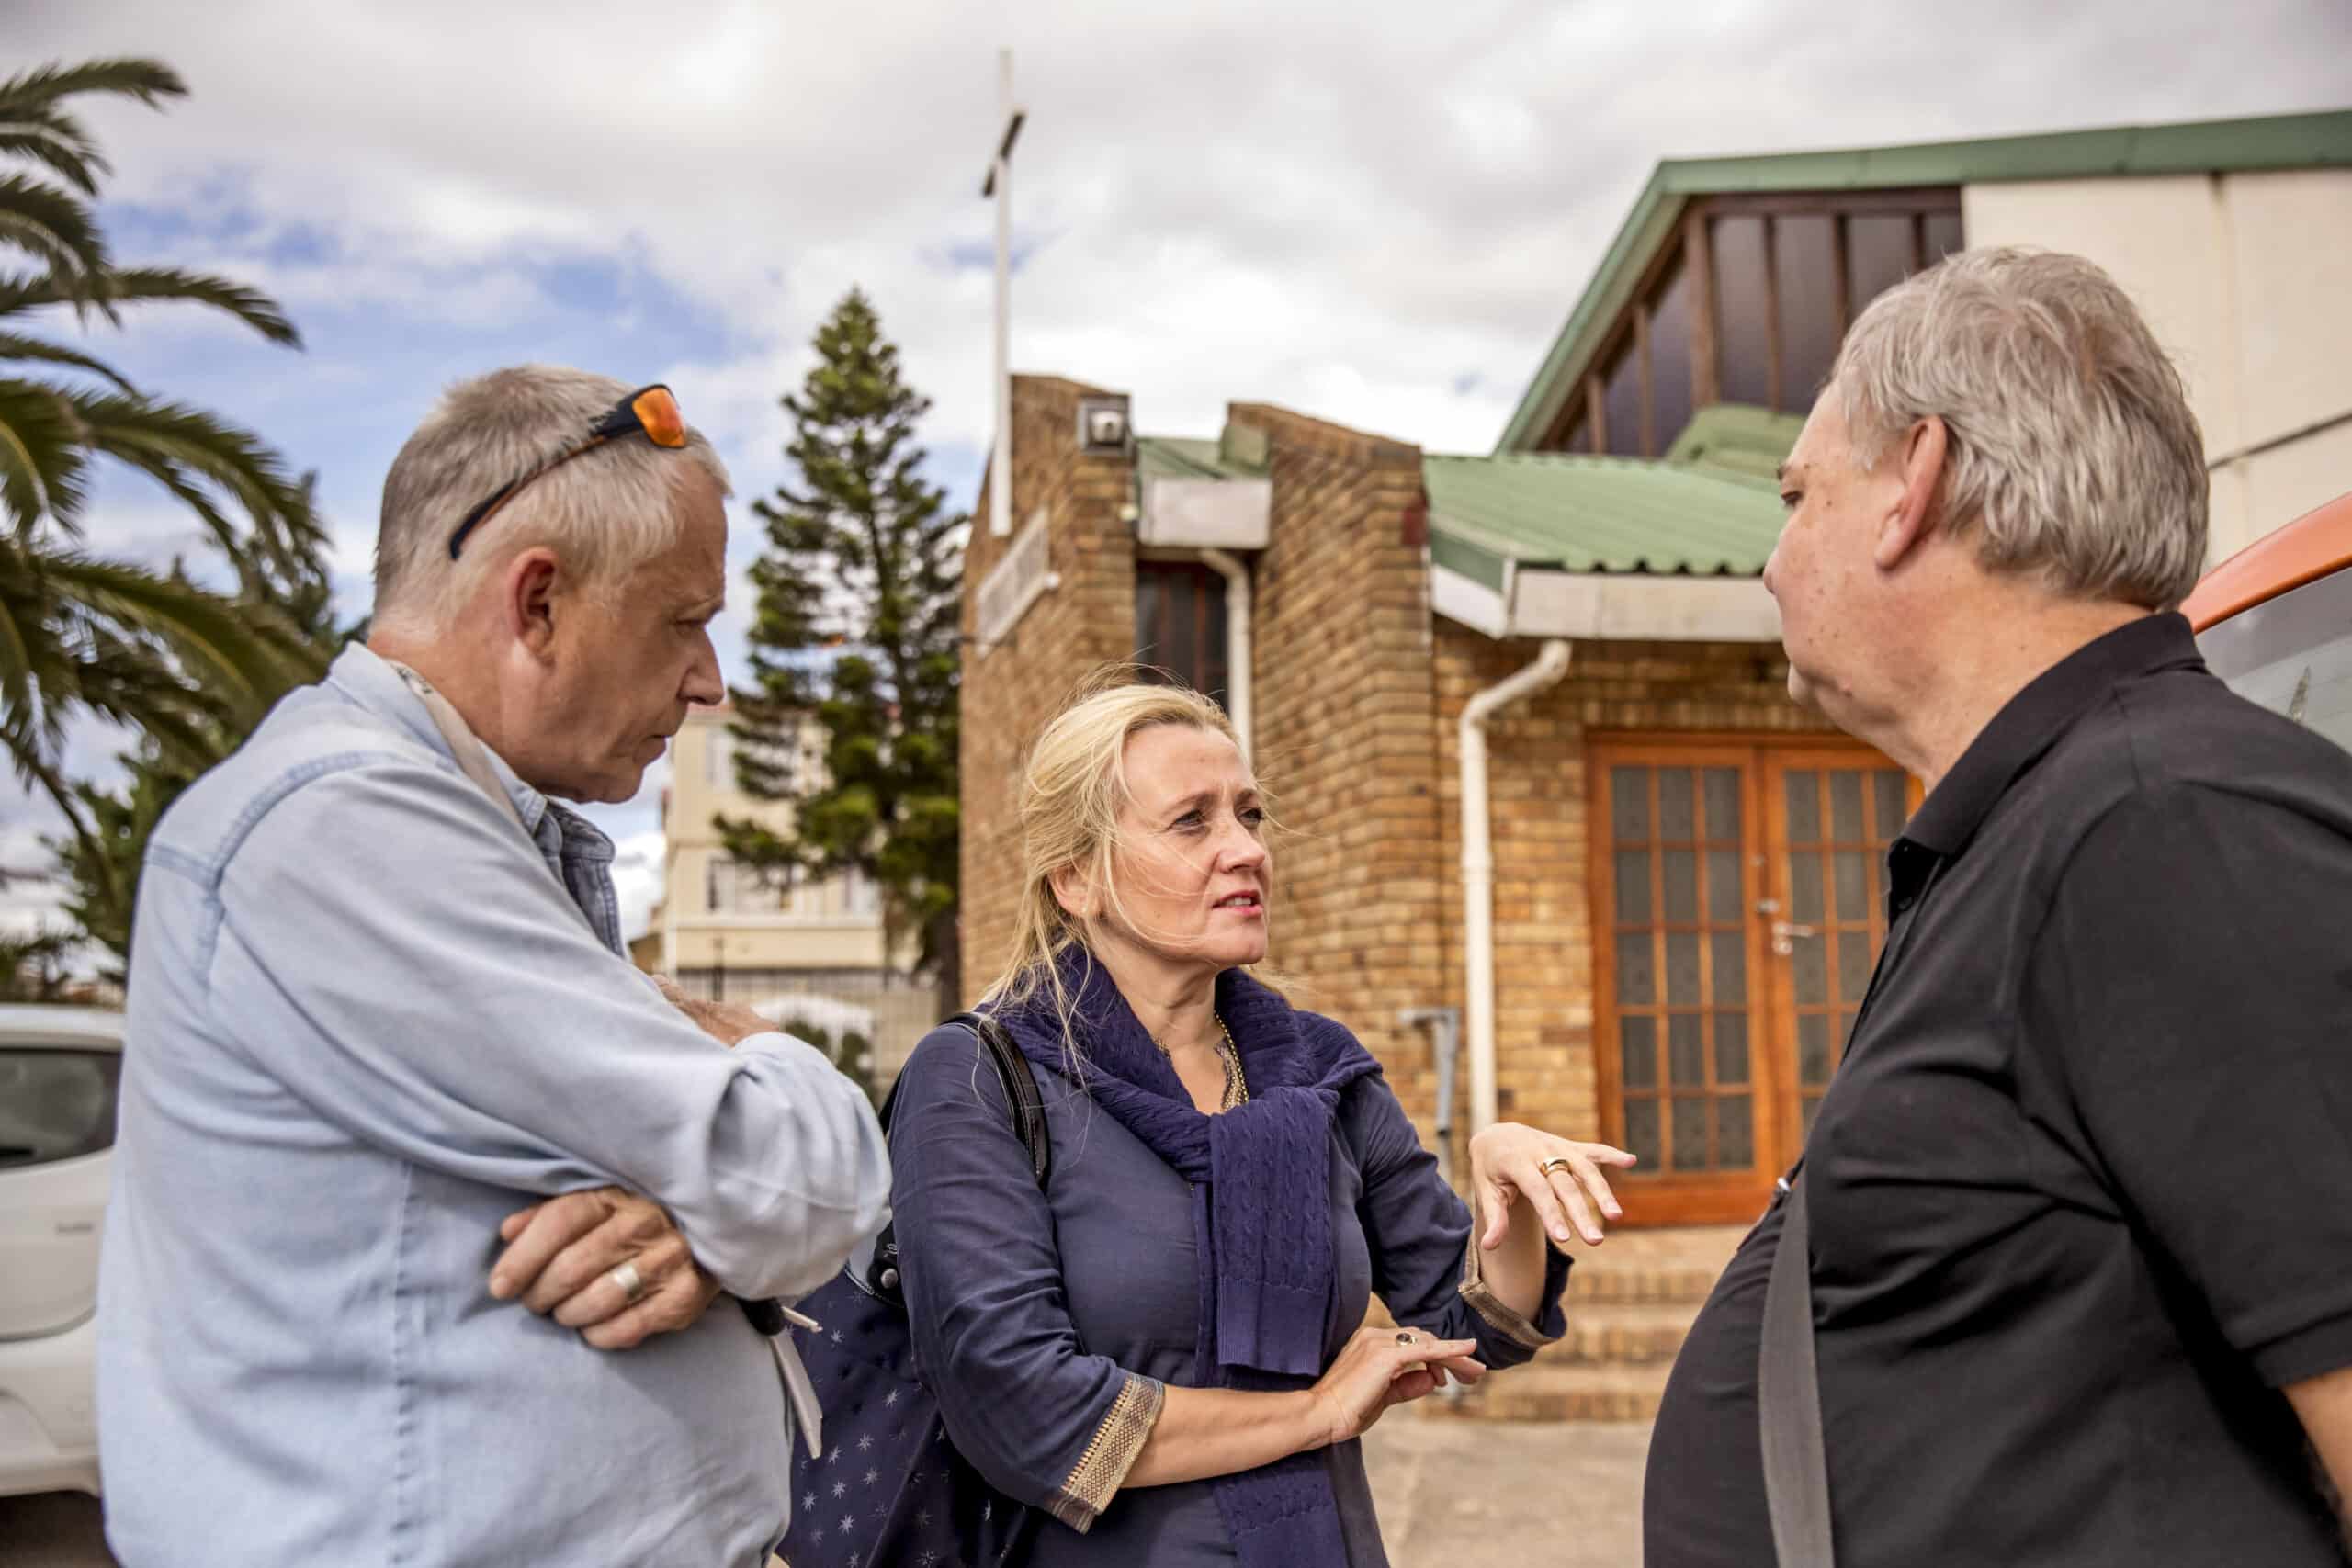 Zwei ältere Männer und eine Frau unterhalten sich im Freien in der Nähe eines Gebäudes unter einem bewölkten Himmel. Die Frau, die in der Mitte steht, gestikuliert, während sie mit einem der Männer spricht. © Fotografie Tomas Rodriguez